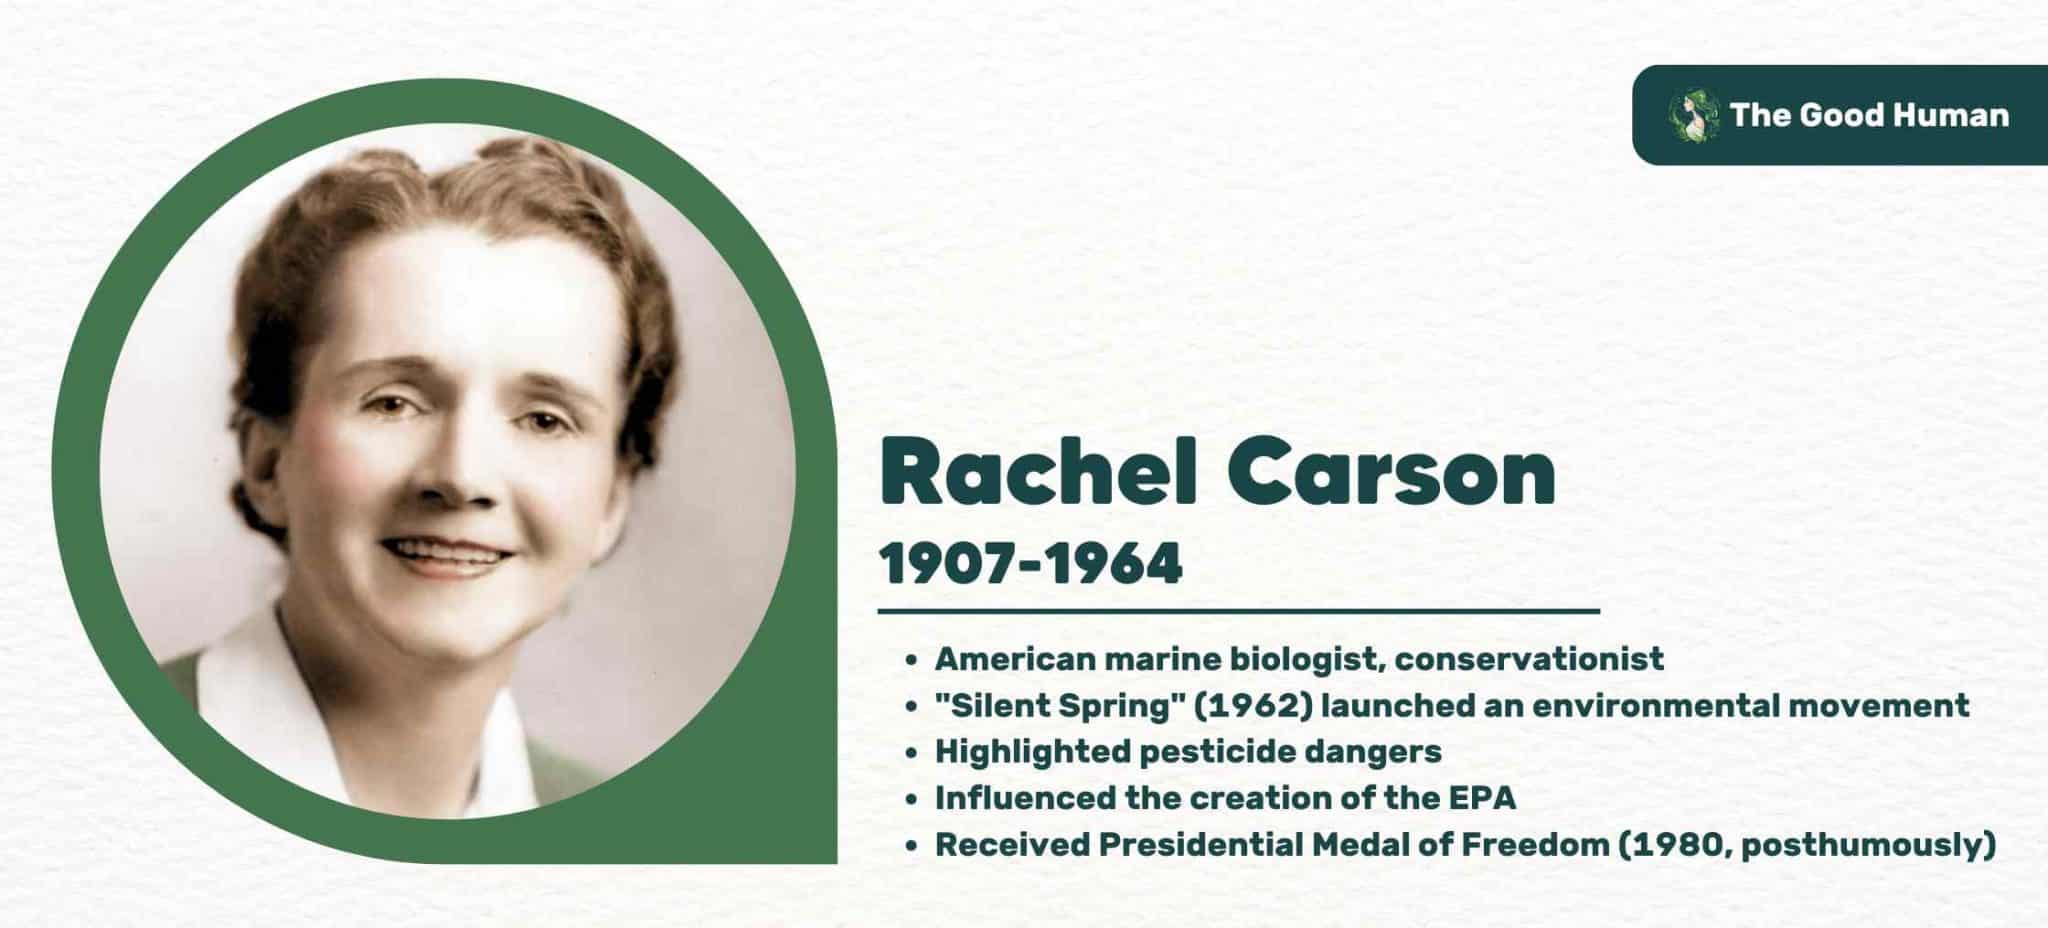 About Rachel Carson